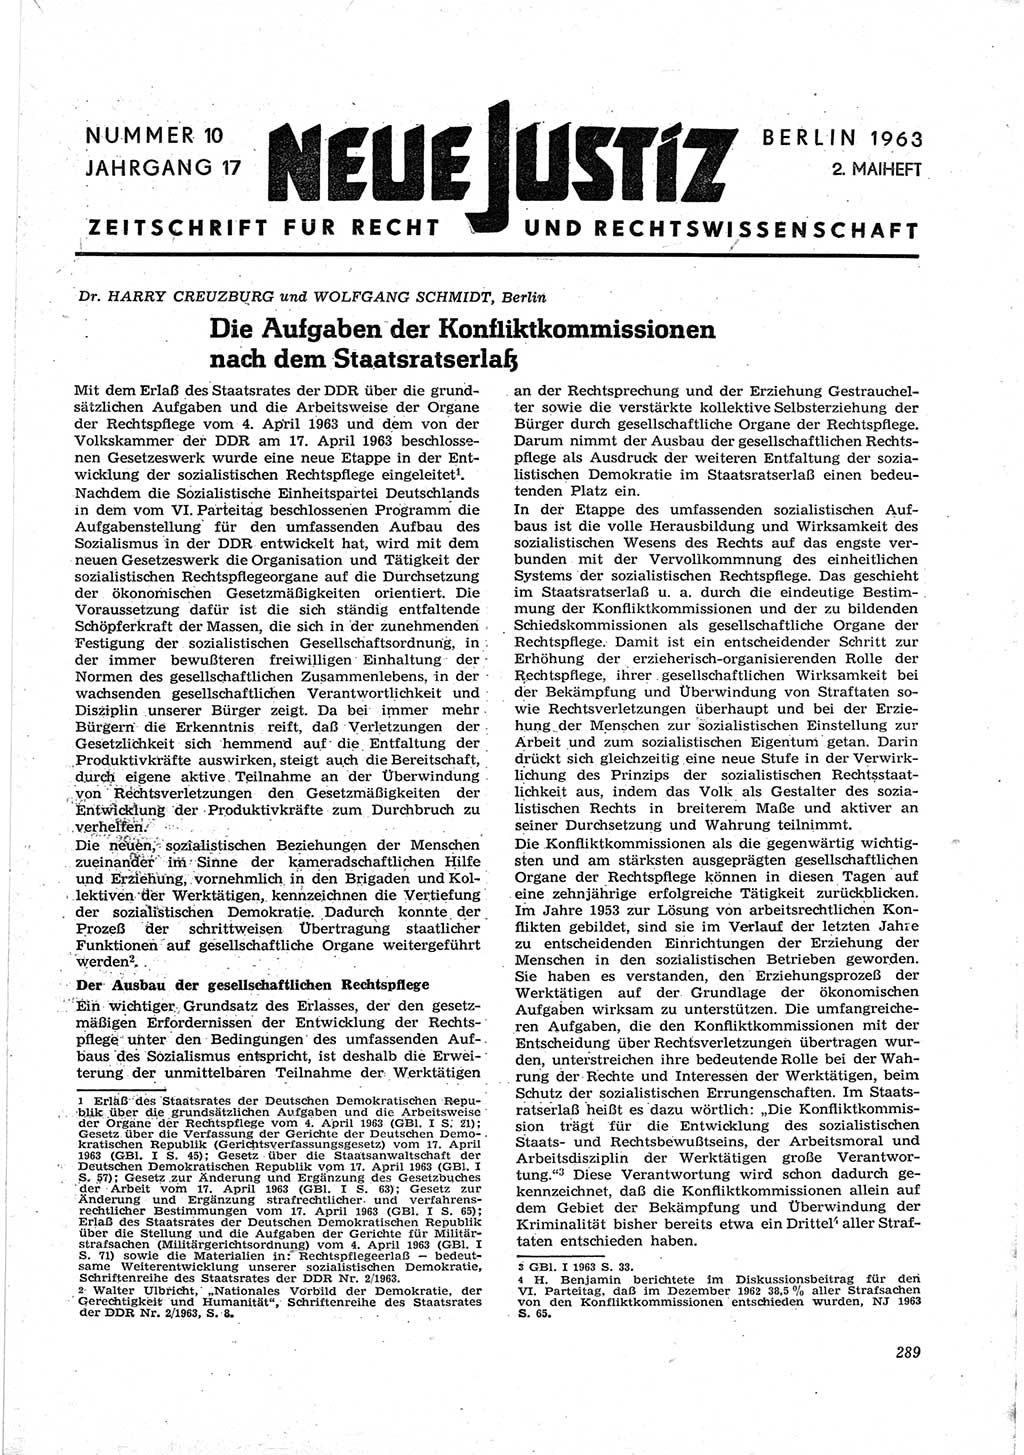 Neue Justiz (NJ), Zeitschrift für Recht und Rechtswissenschaft [Deutsche Demokratische Republik (DDR)], 17. Jahrgang 1963, Seite 289 (NJ DDR 1963, S. 289)